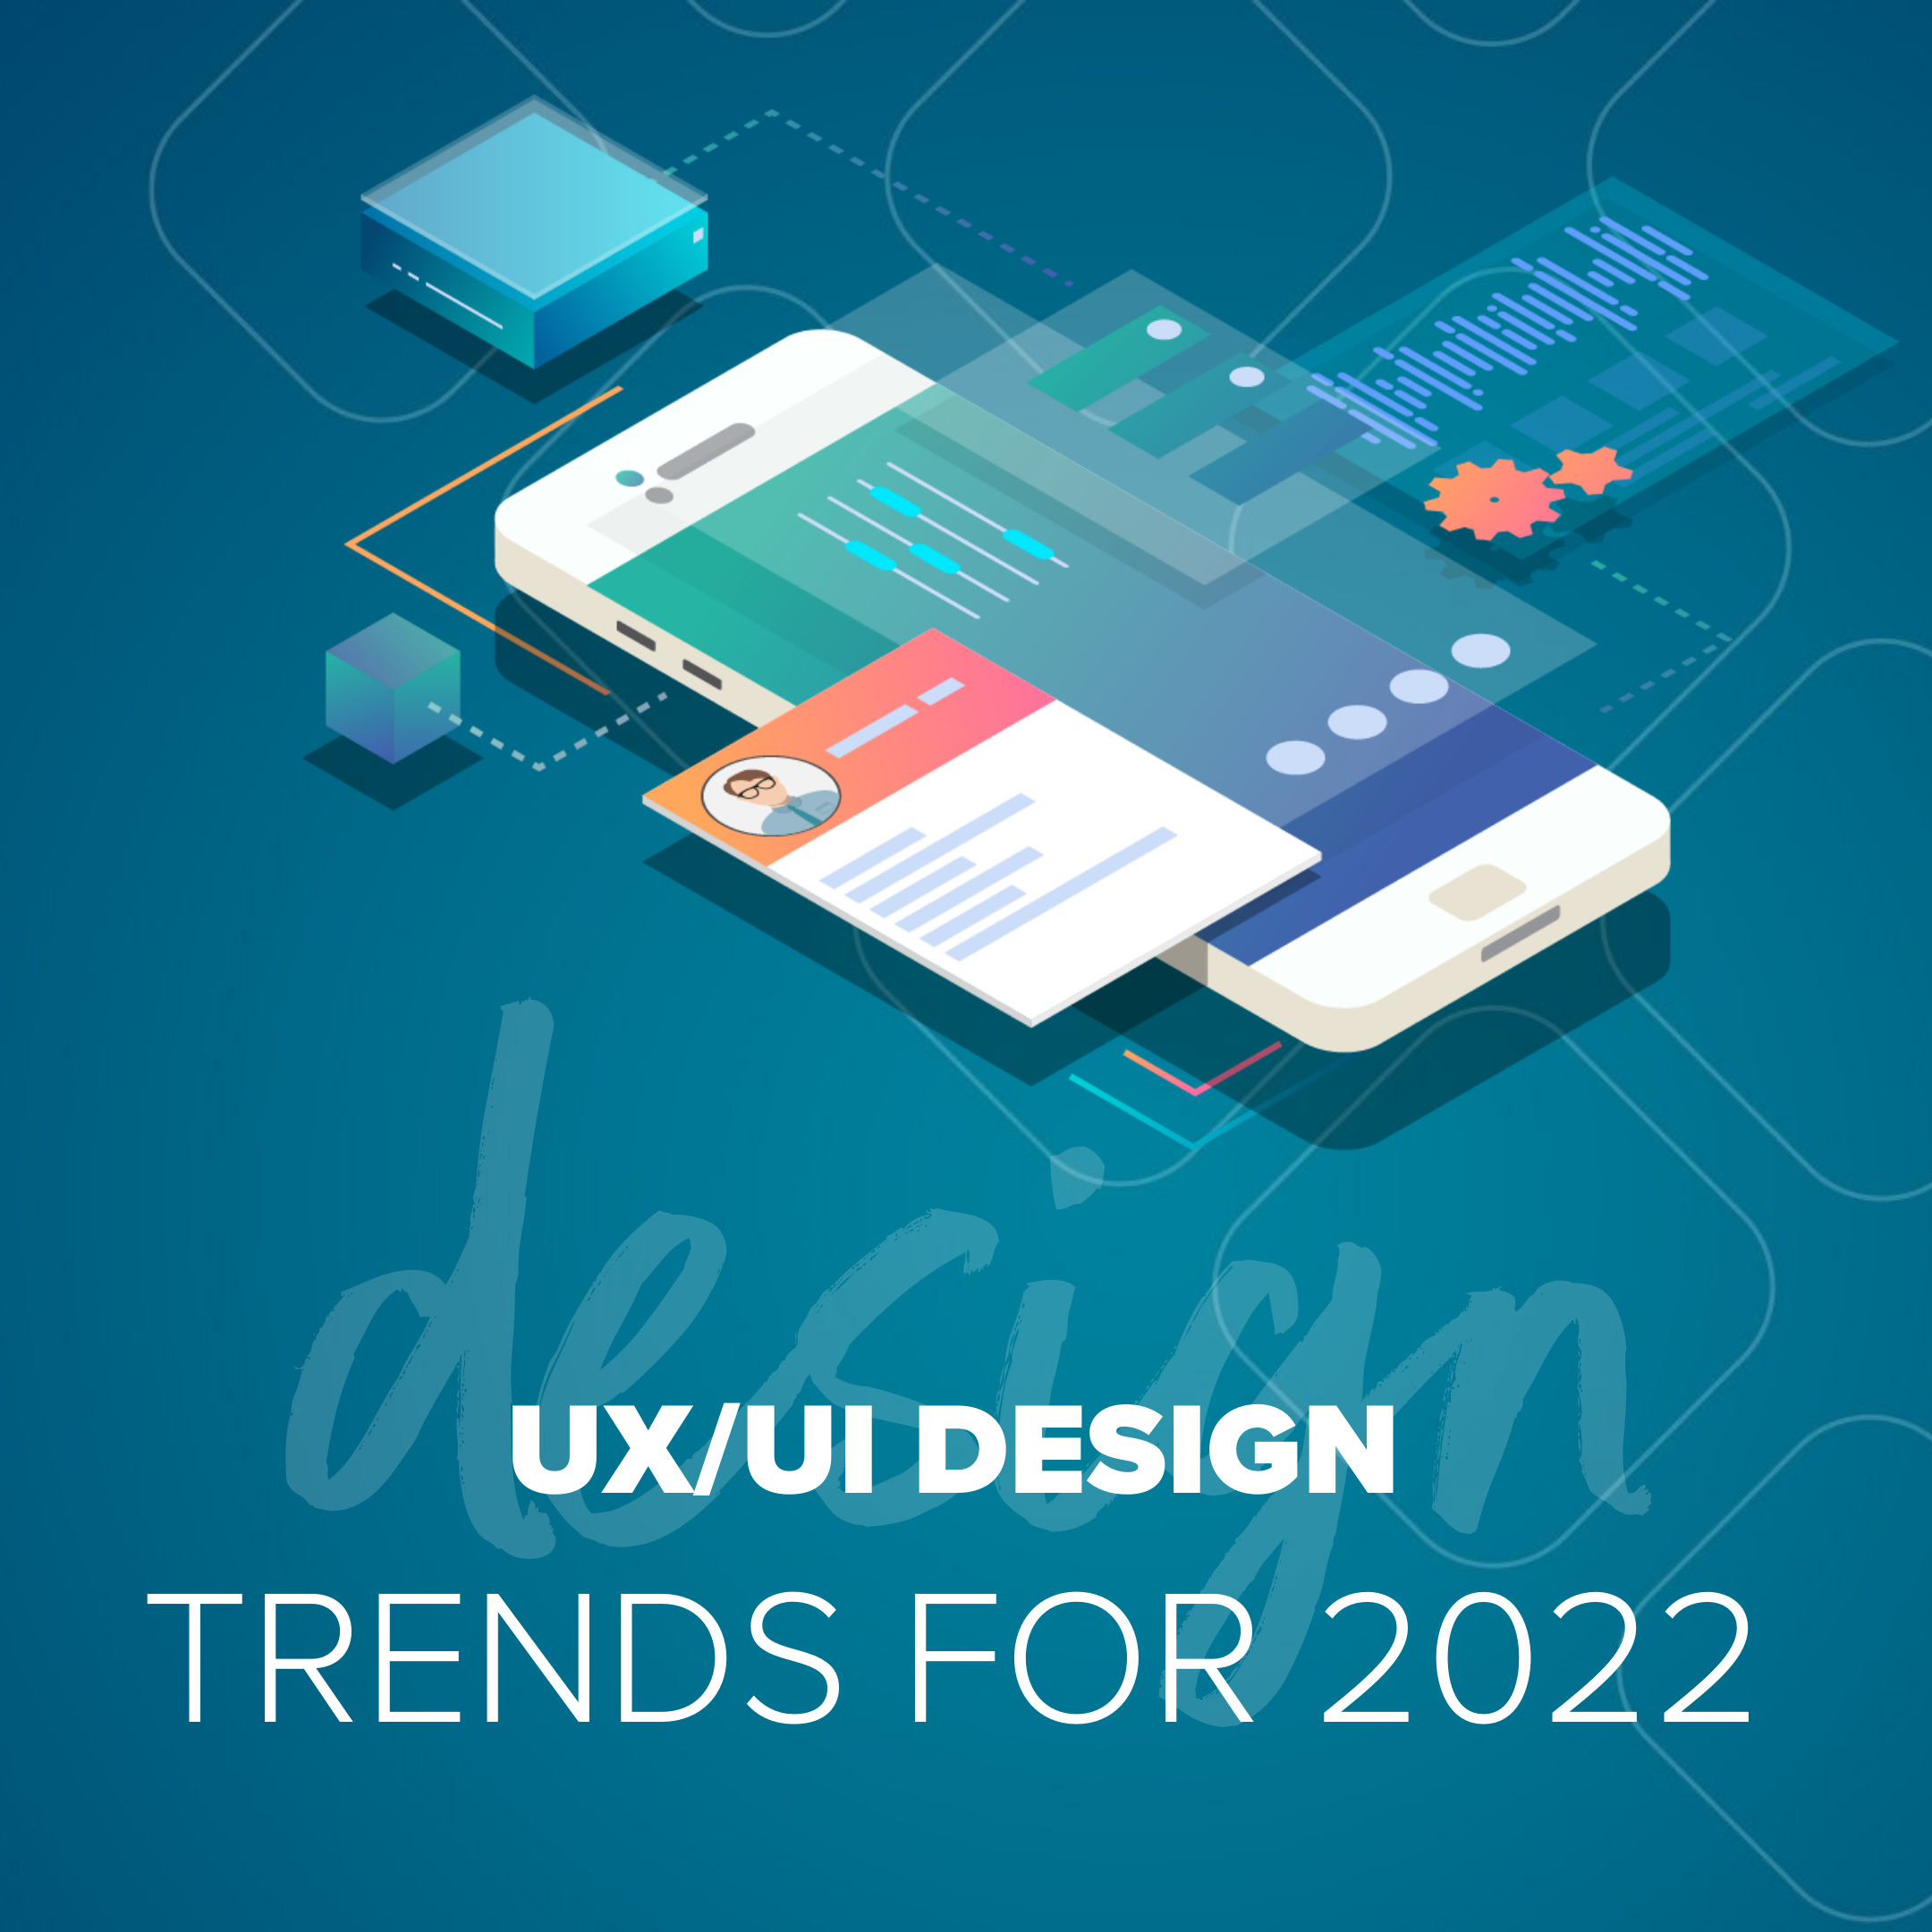 ux/ui design trends